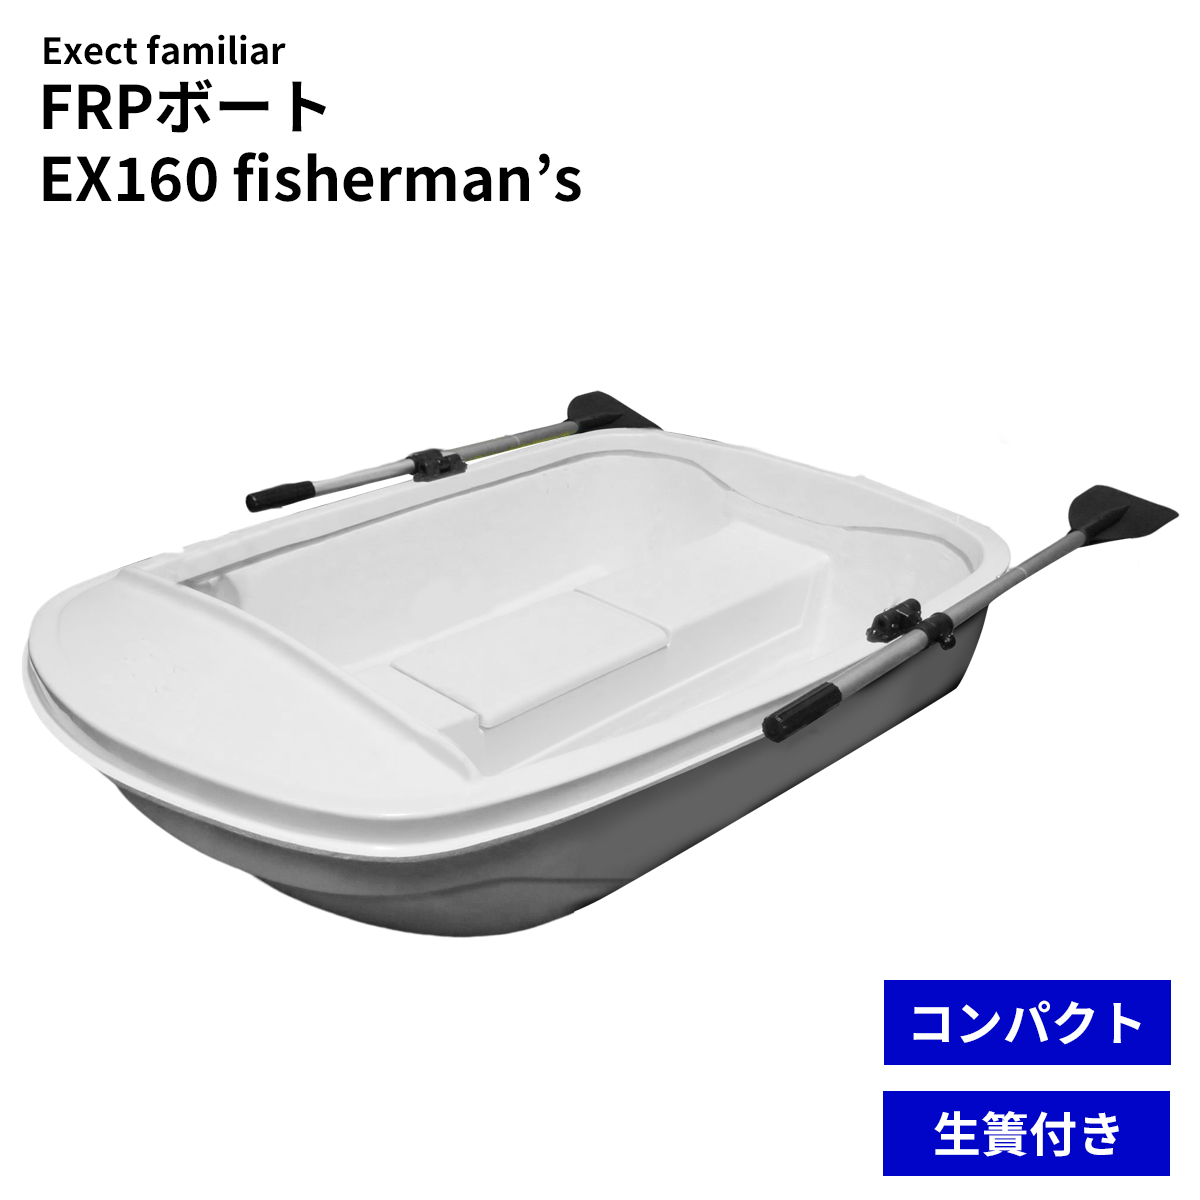 FRPボート Exect フィッシャーマンズBOAT2020' EX160fisherman's 免許不要 2馬力対応 小型 釣り 手漕ぎ 船 |  Exect Familiar アウトドア・工具